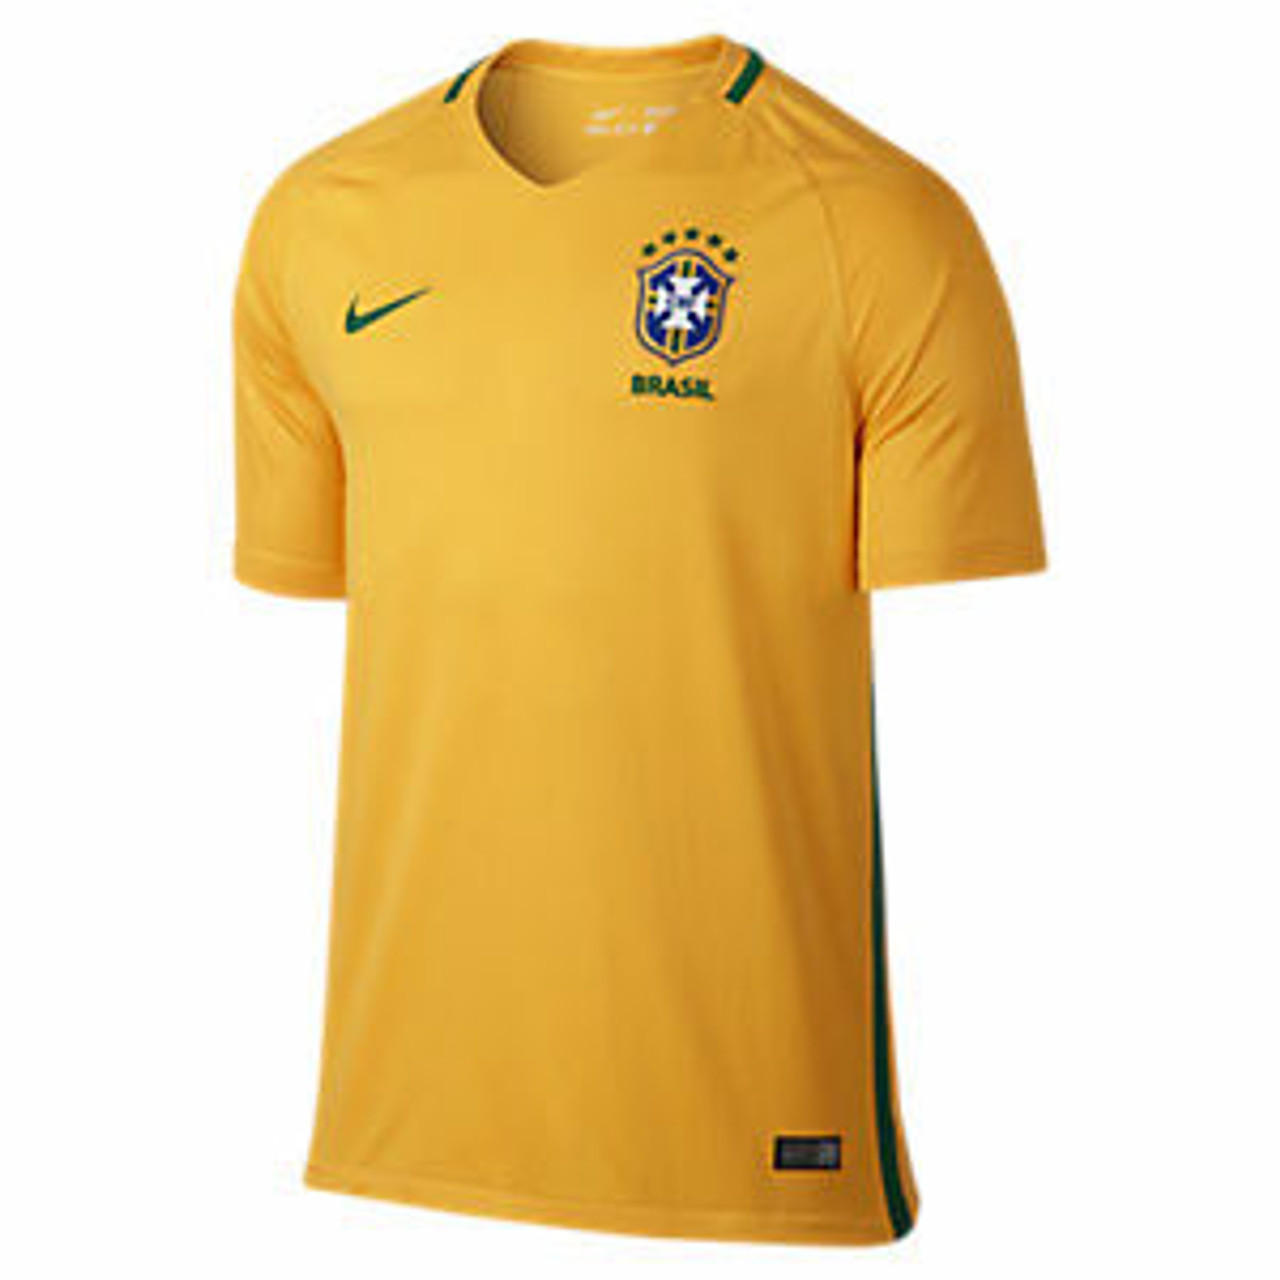 Brazil National Team Men's T-shirt Soccer Football League